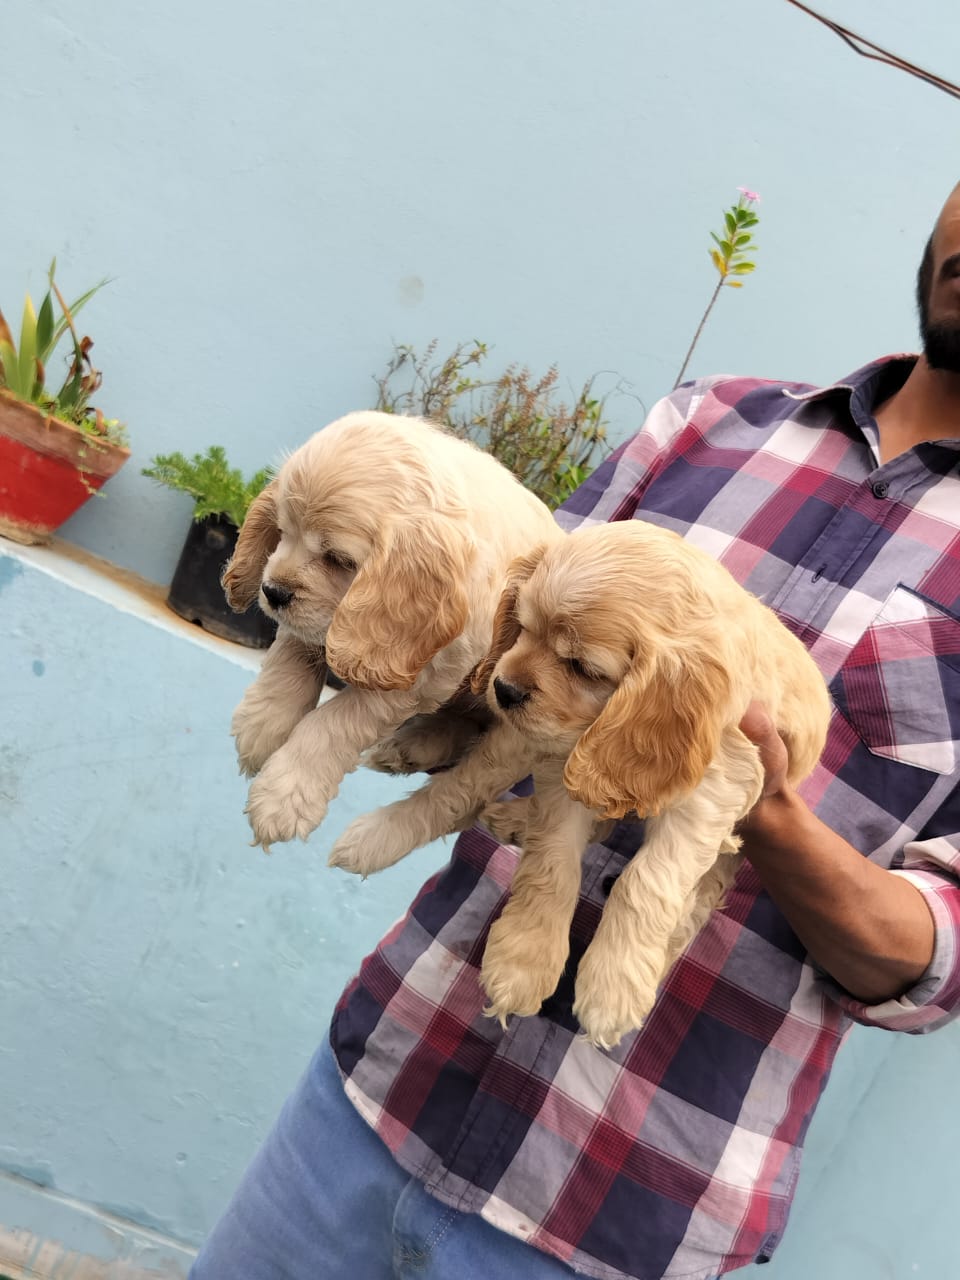 AMERICAN COCKER puppies from Delhi. Breeder: Suraj Tomar